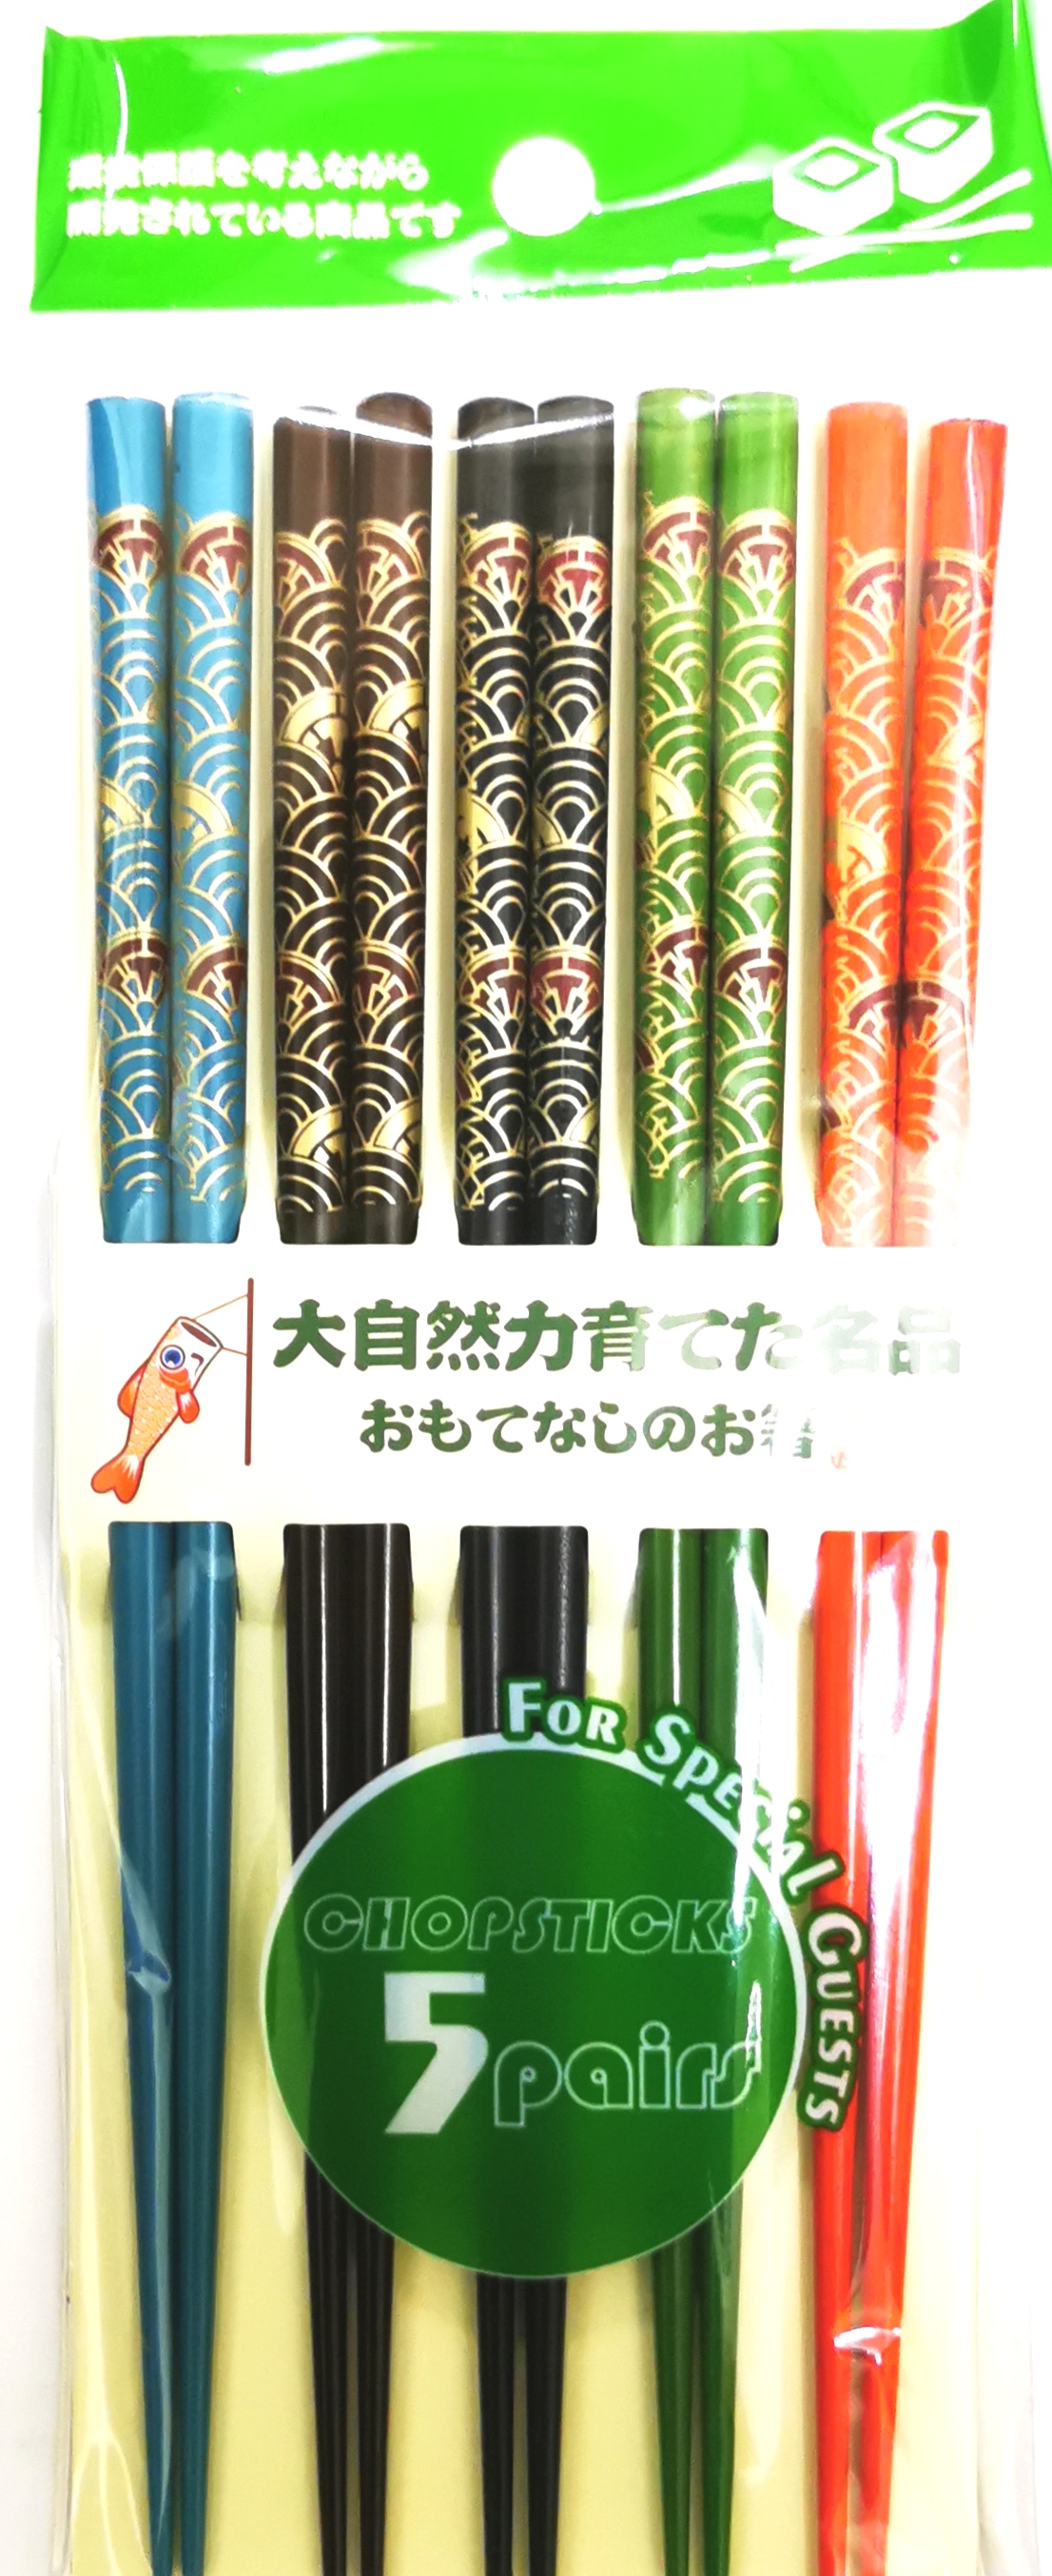 Japanese chopsticks(colour)5pcs